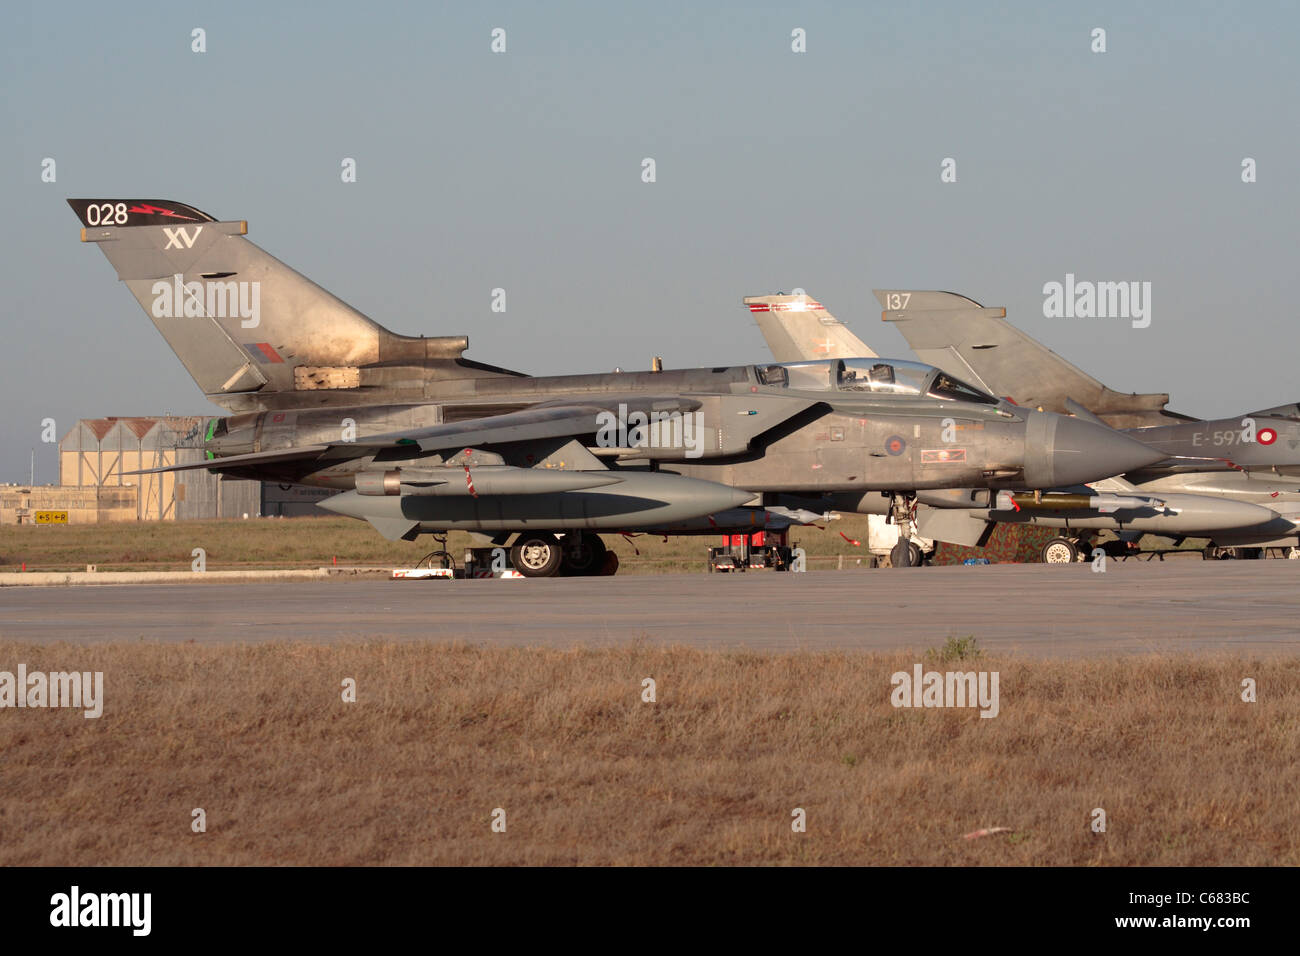 Royal Air Force Panavia Tornado GR4 militärische Düsenflugzeug in Malta während der Operationen über Libyen, 29. Juli 2011 Stockfoto